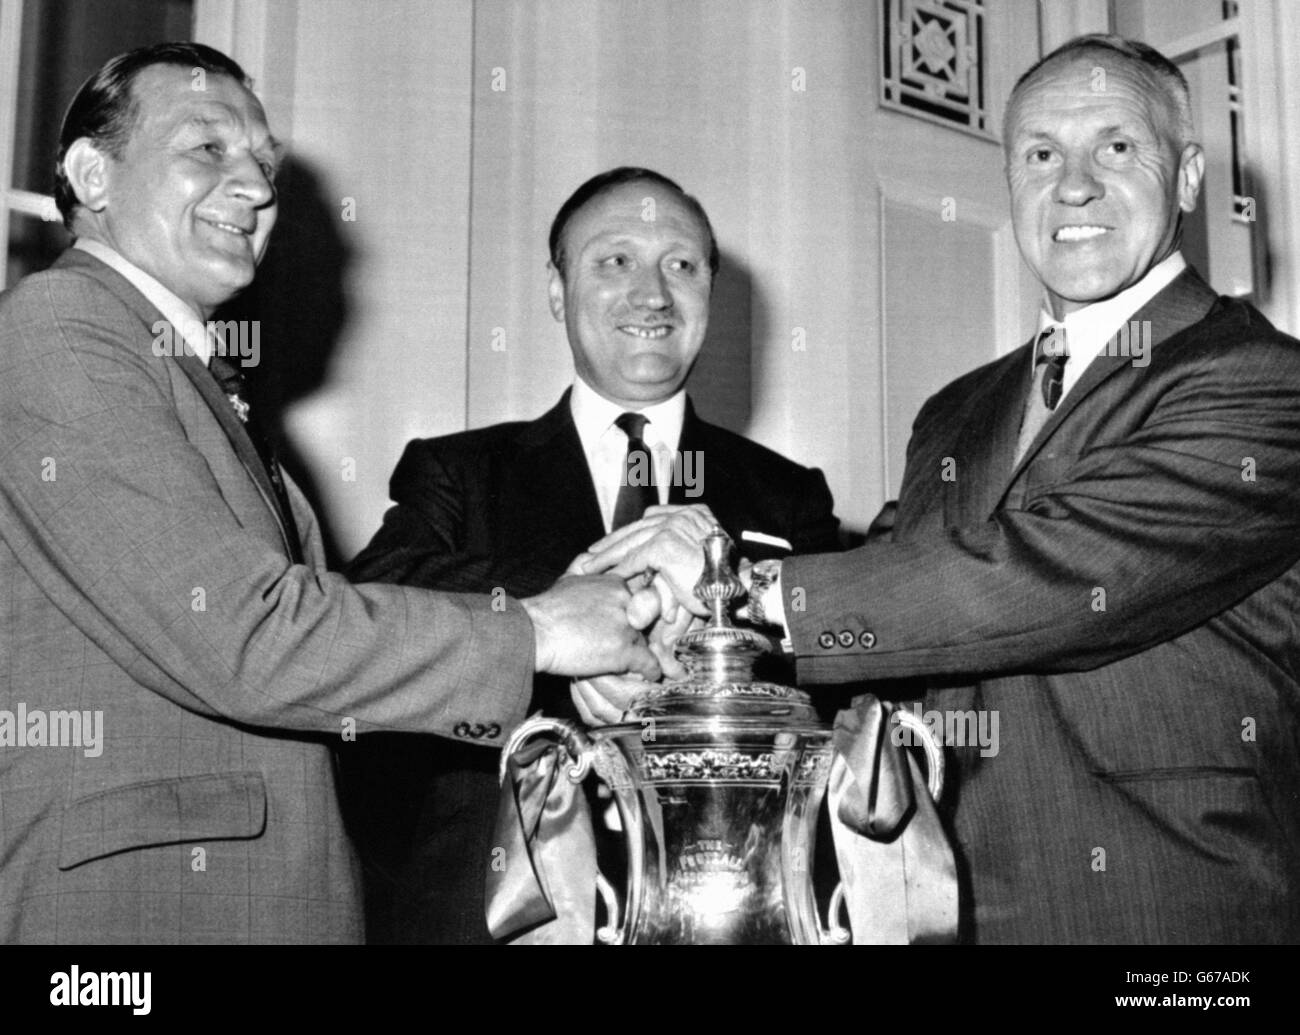 Le nouveau directeur de Liverpool, Bobby Paisley (à gauche), reçoit les bons voeux du président du club, John Smith (au centre), et du directeur sortant, Bill Shankly, après l'annonce de sa nomination à l'AGA du club.Paisley, une ancienne moitié d'aile de Liverpool, est l'assistante de Shankley depuis trois ans. Banque D'Images